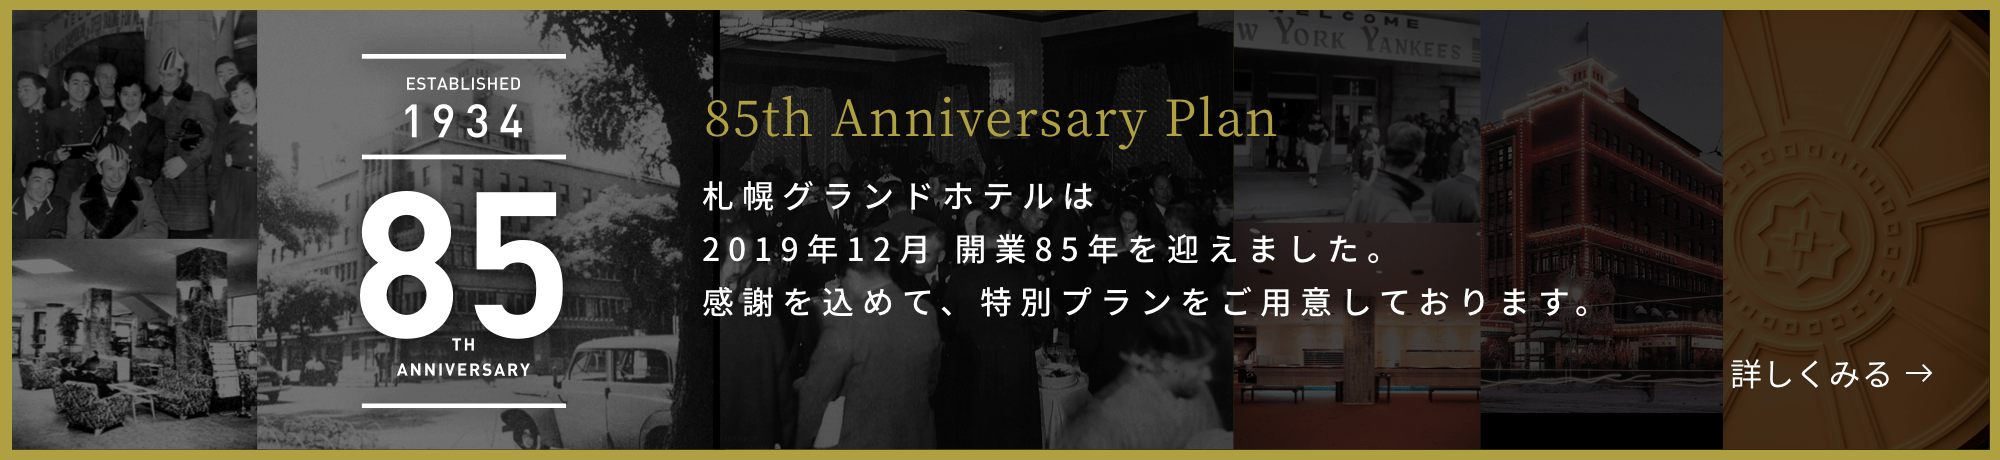 ESTABLISHED 1934 85TH ANNIVERSARY 85th Anniversary Plan 札幌グランドホテルは2019年12月 開業85年を迎えます。感謝を込めて、特別プランをご用意いたしました。 詳しくみる